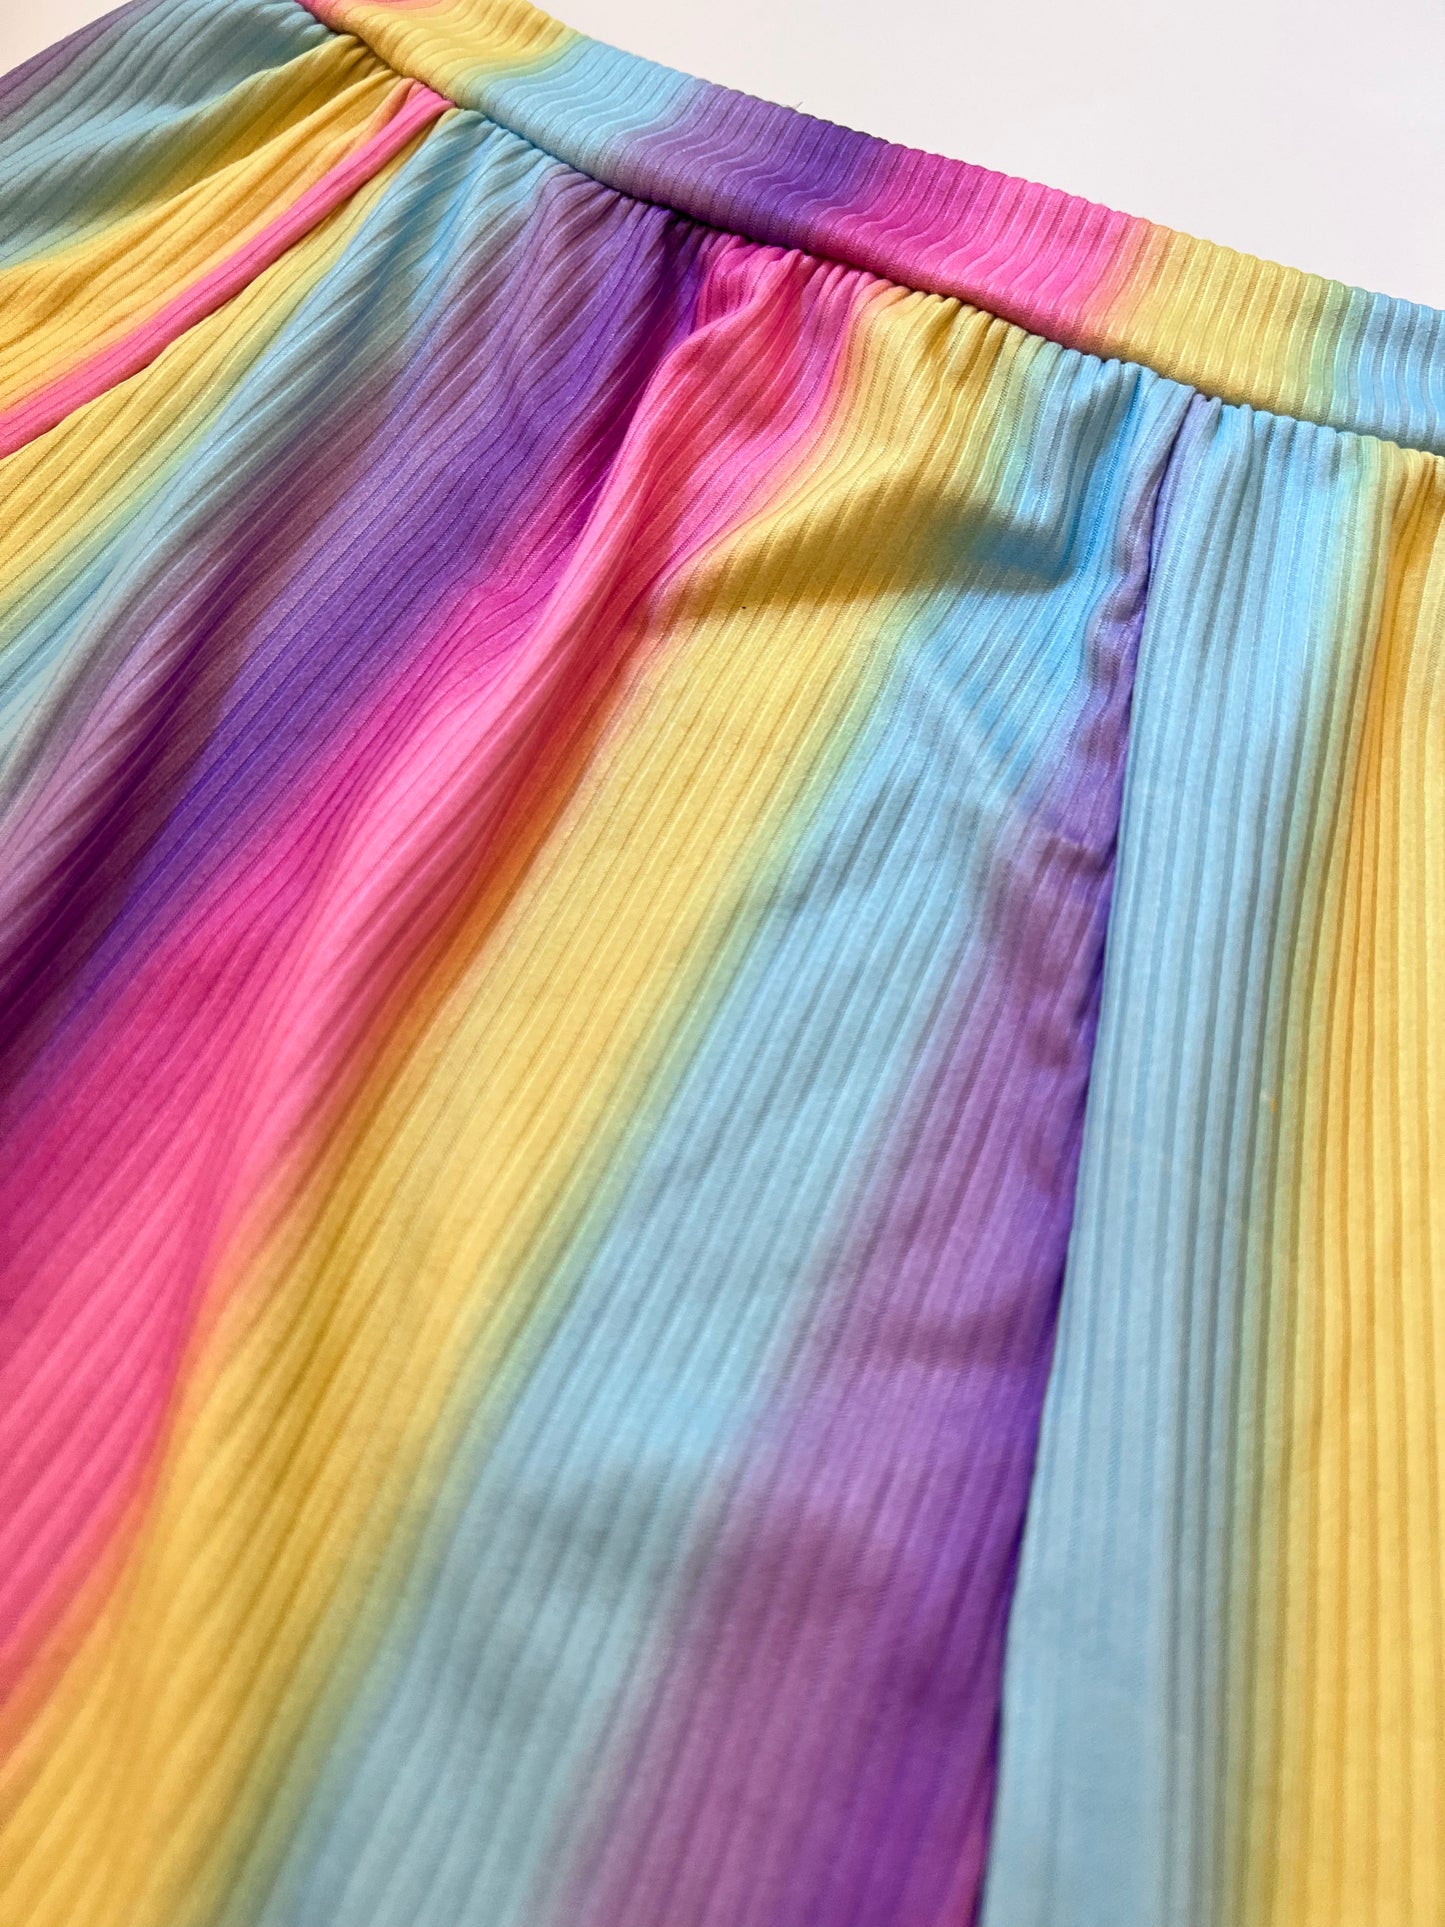 Ombré Rainbow Tween Teen Skirt